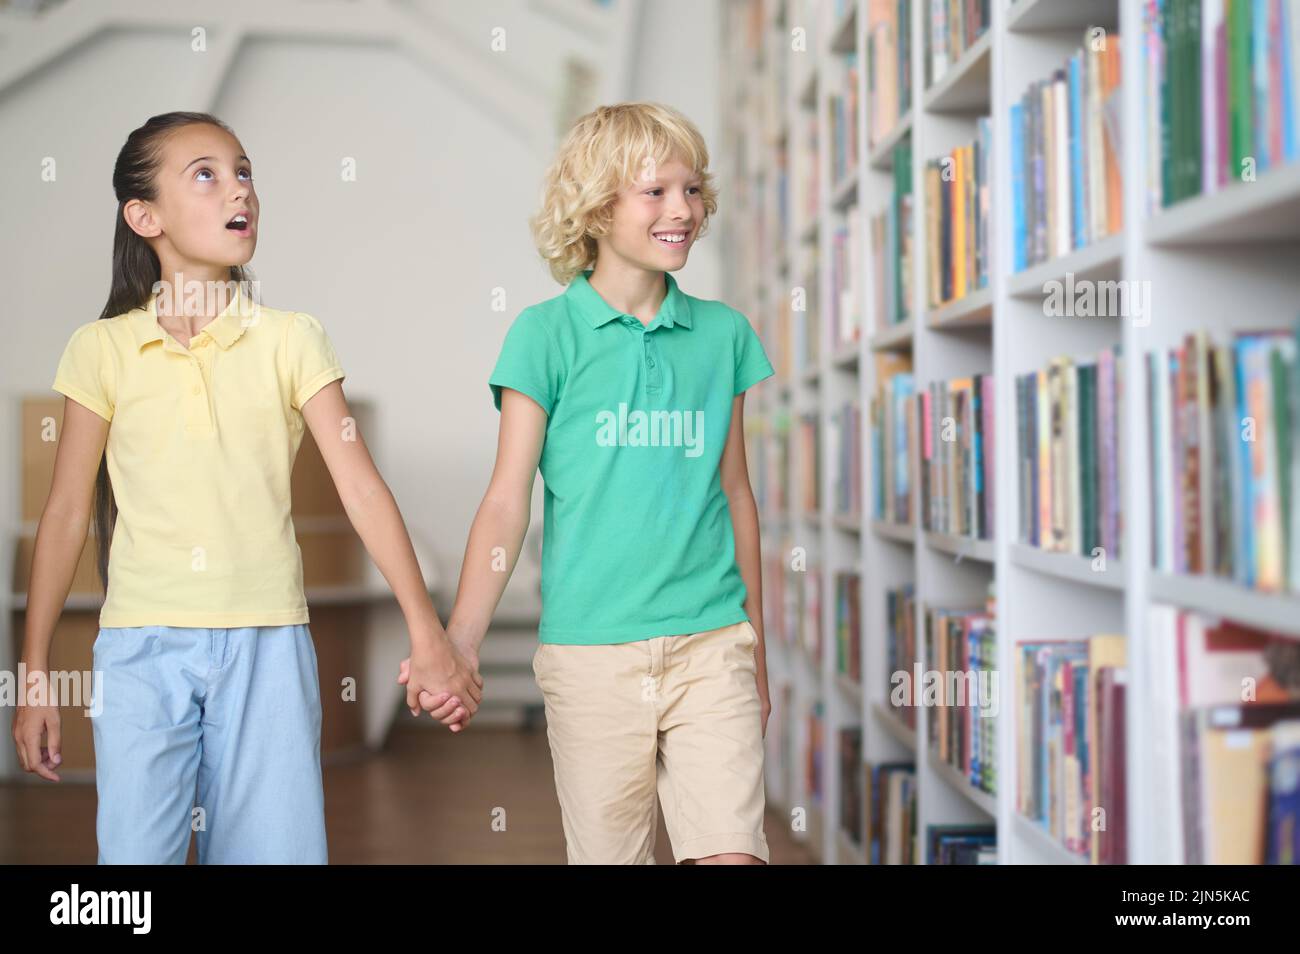 Deux enfants regardent les étagères empilées avec des livres Banque D'Images